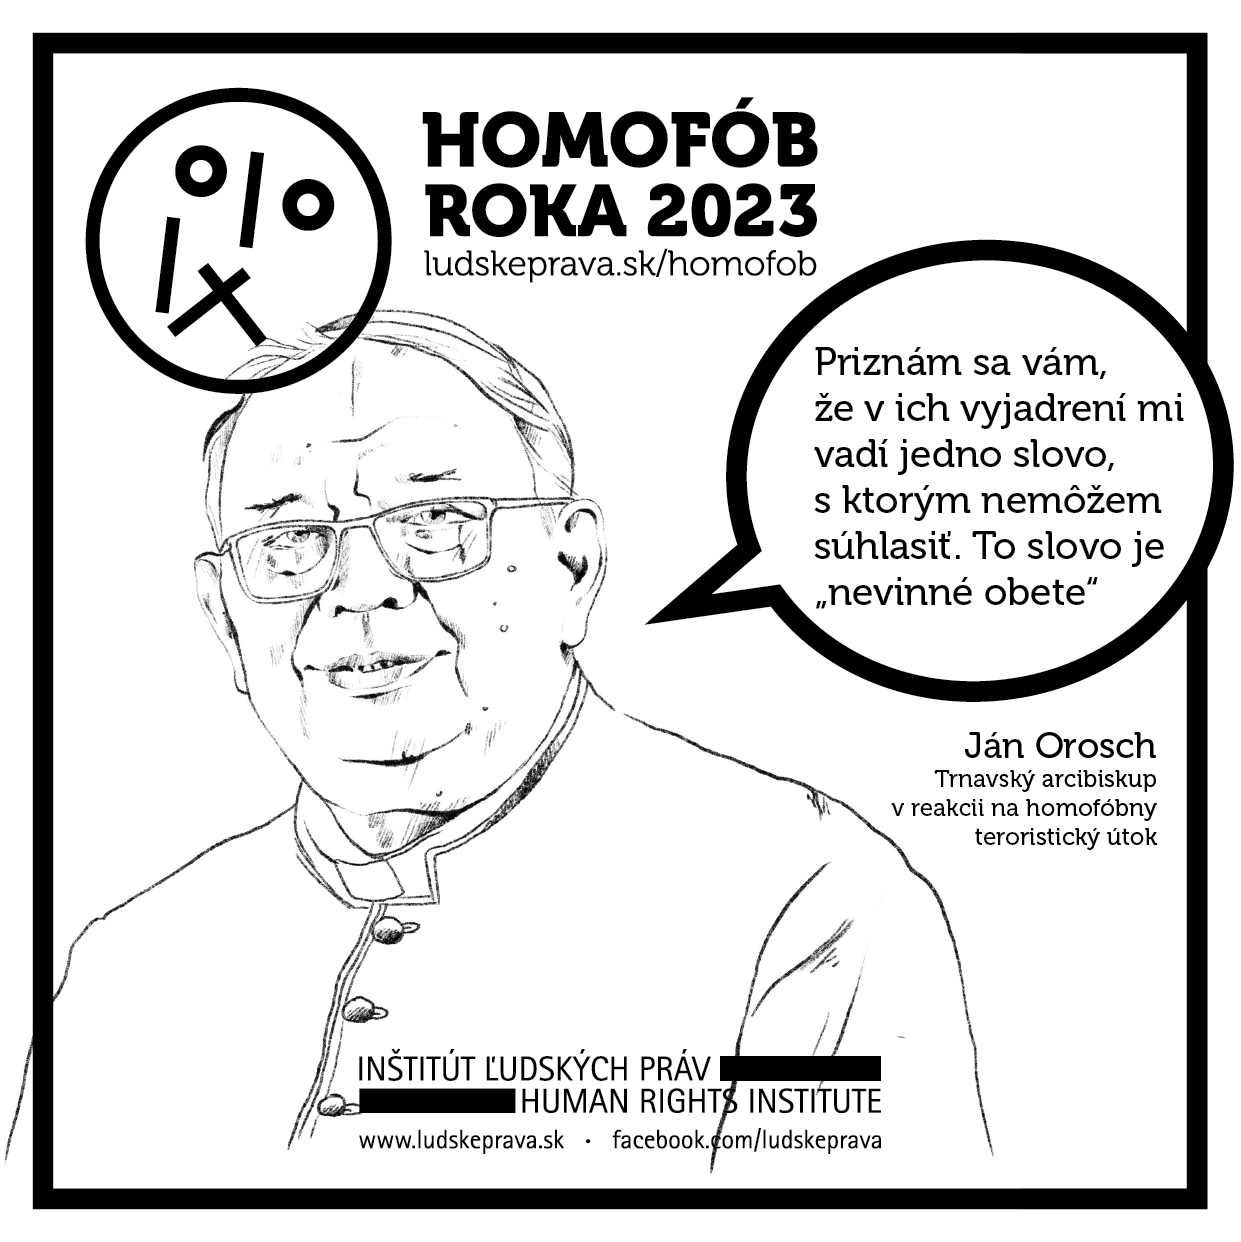 Homofob roka 2023